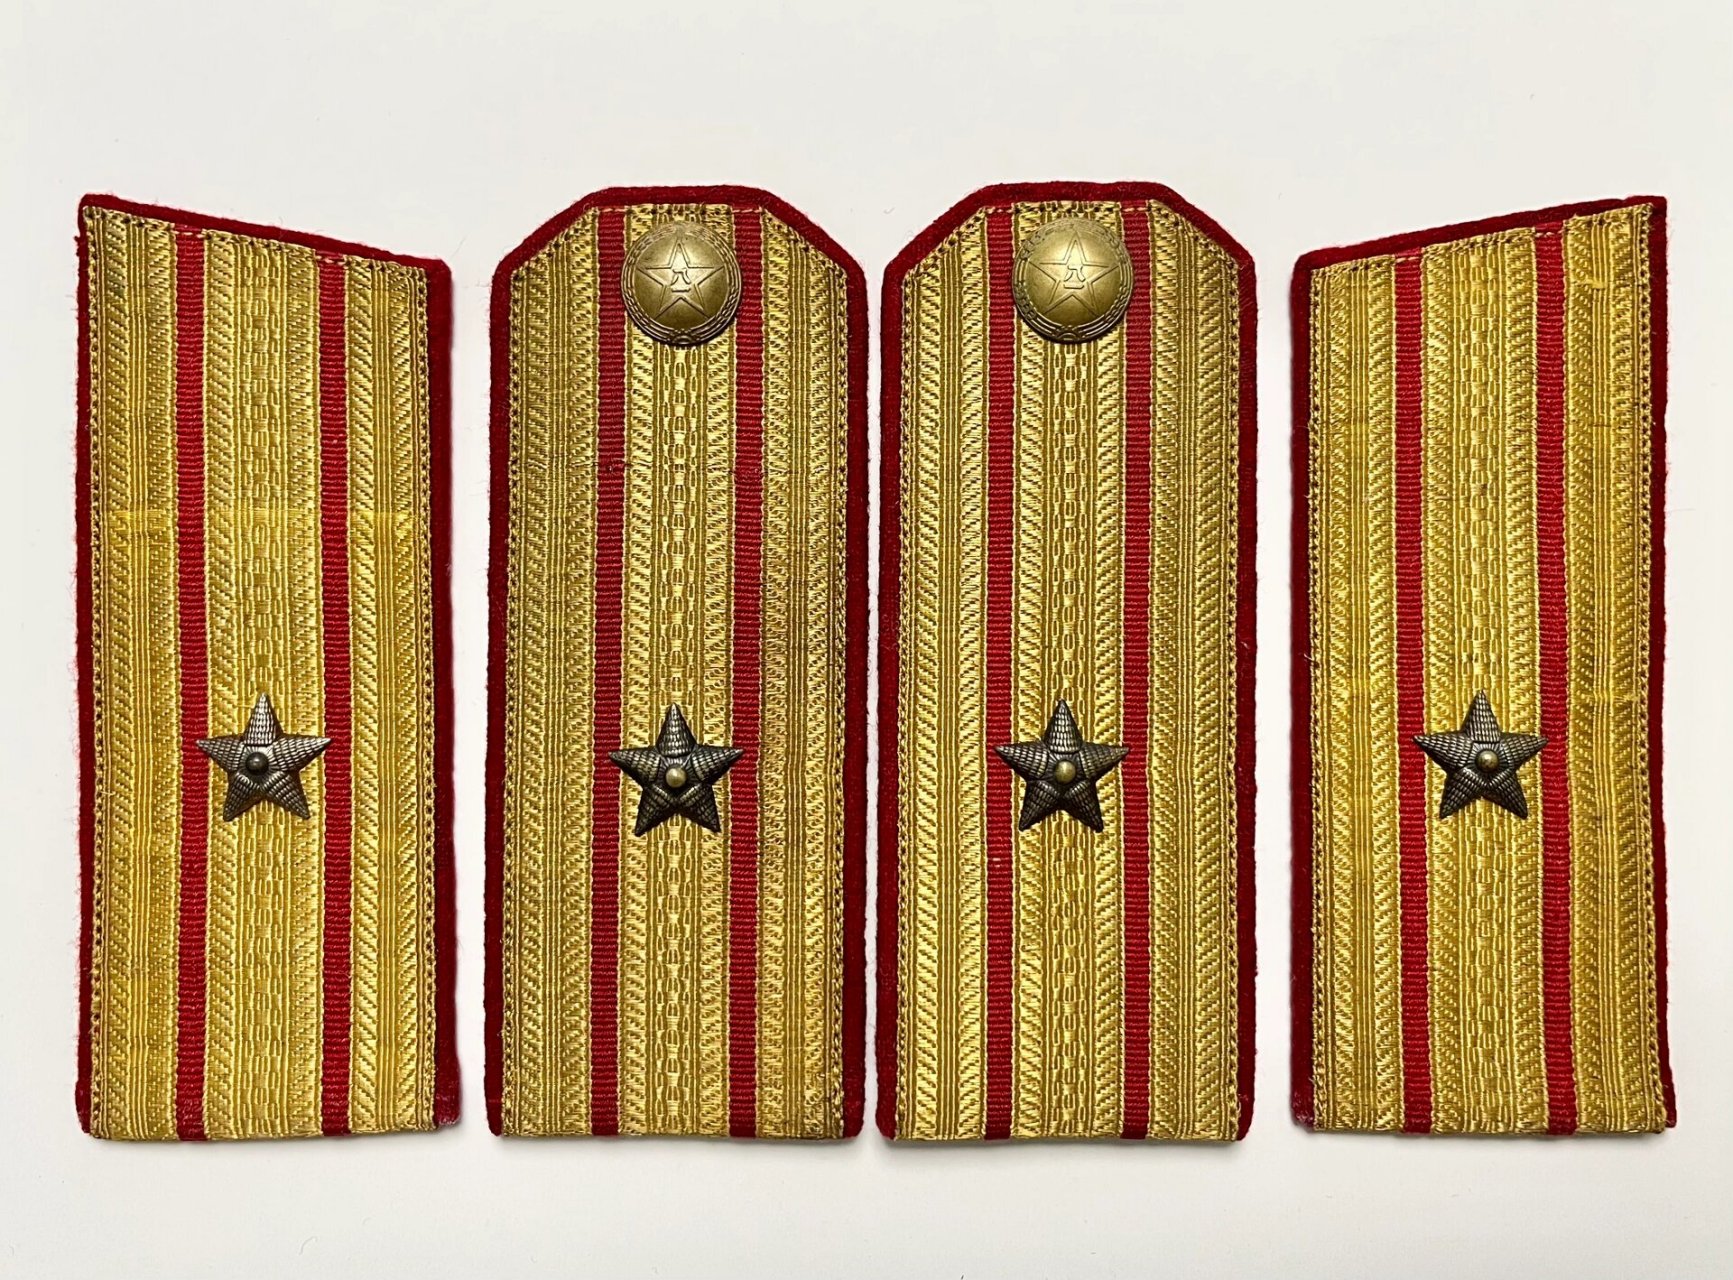 55式陆海空62ga校官军衔 1955年解放军第一次授衔,我军的肩章,领章和